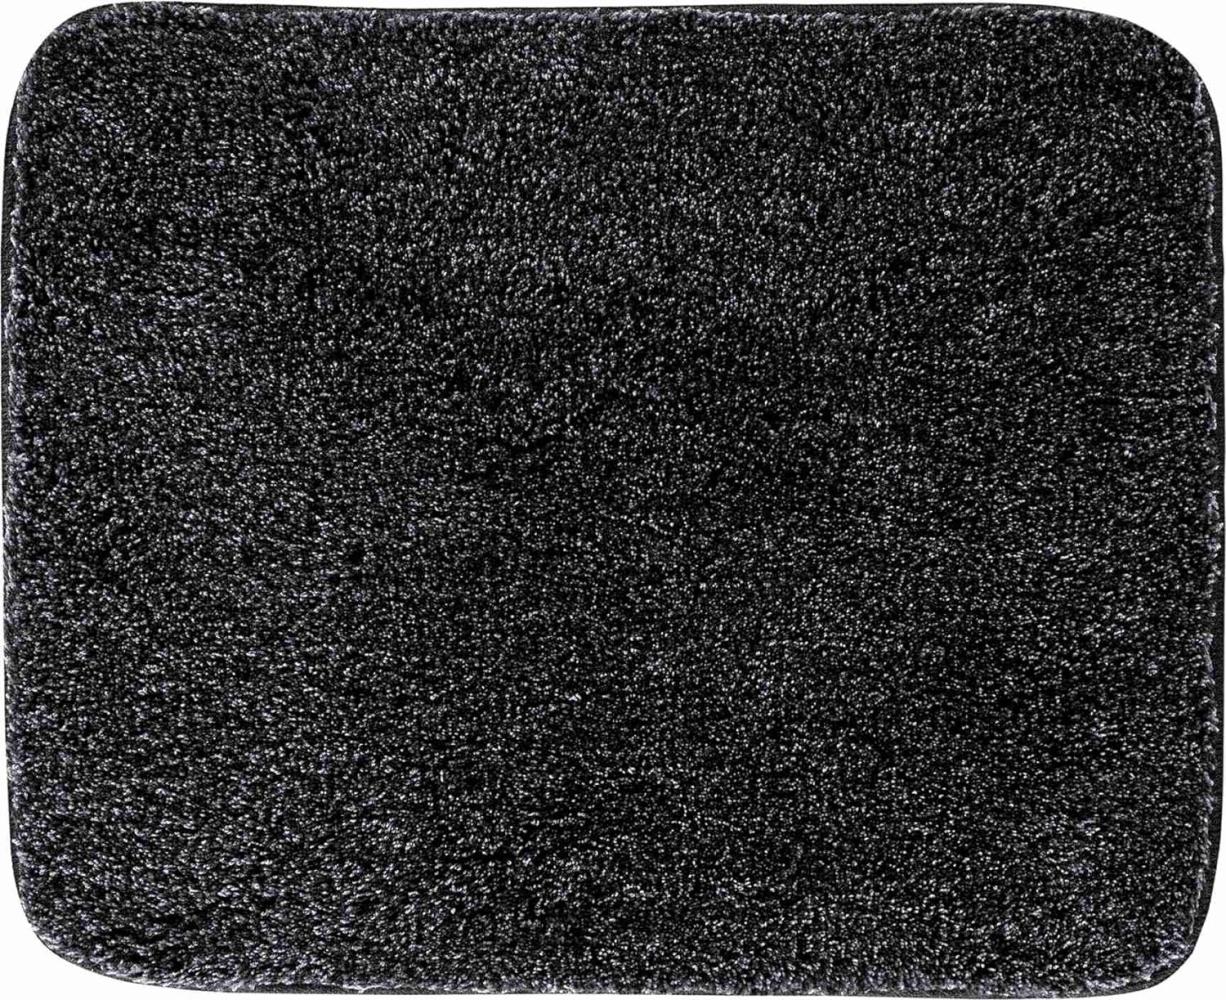 Grund Melange Badteppich, Acryl, Anthrazit, 50 x 60 cm Bild 1